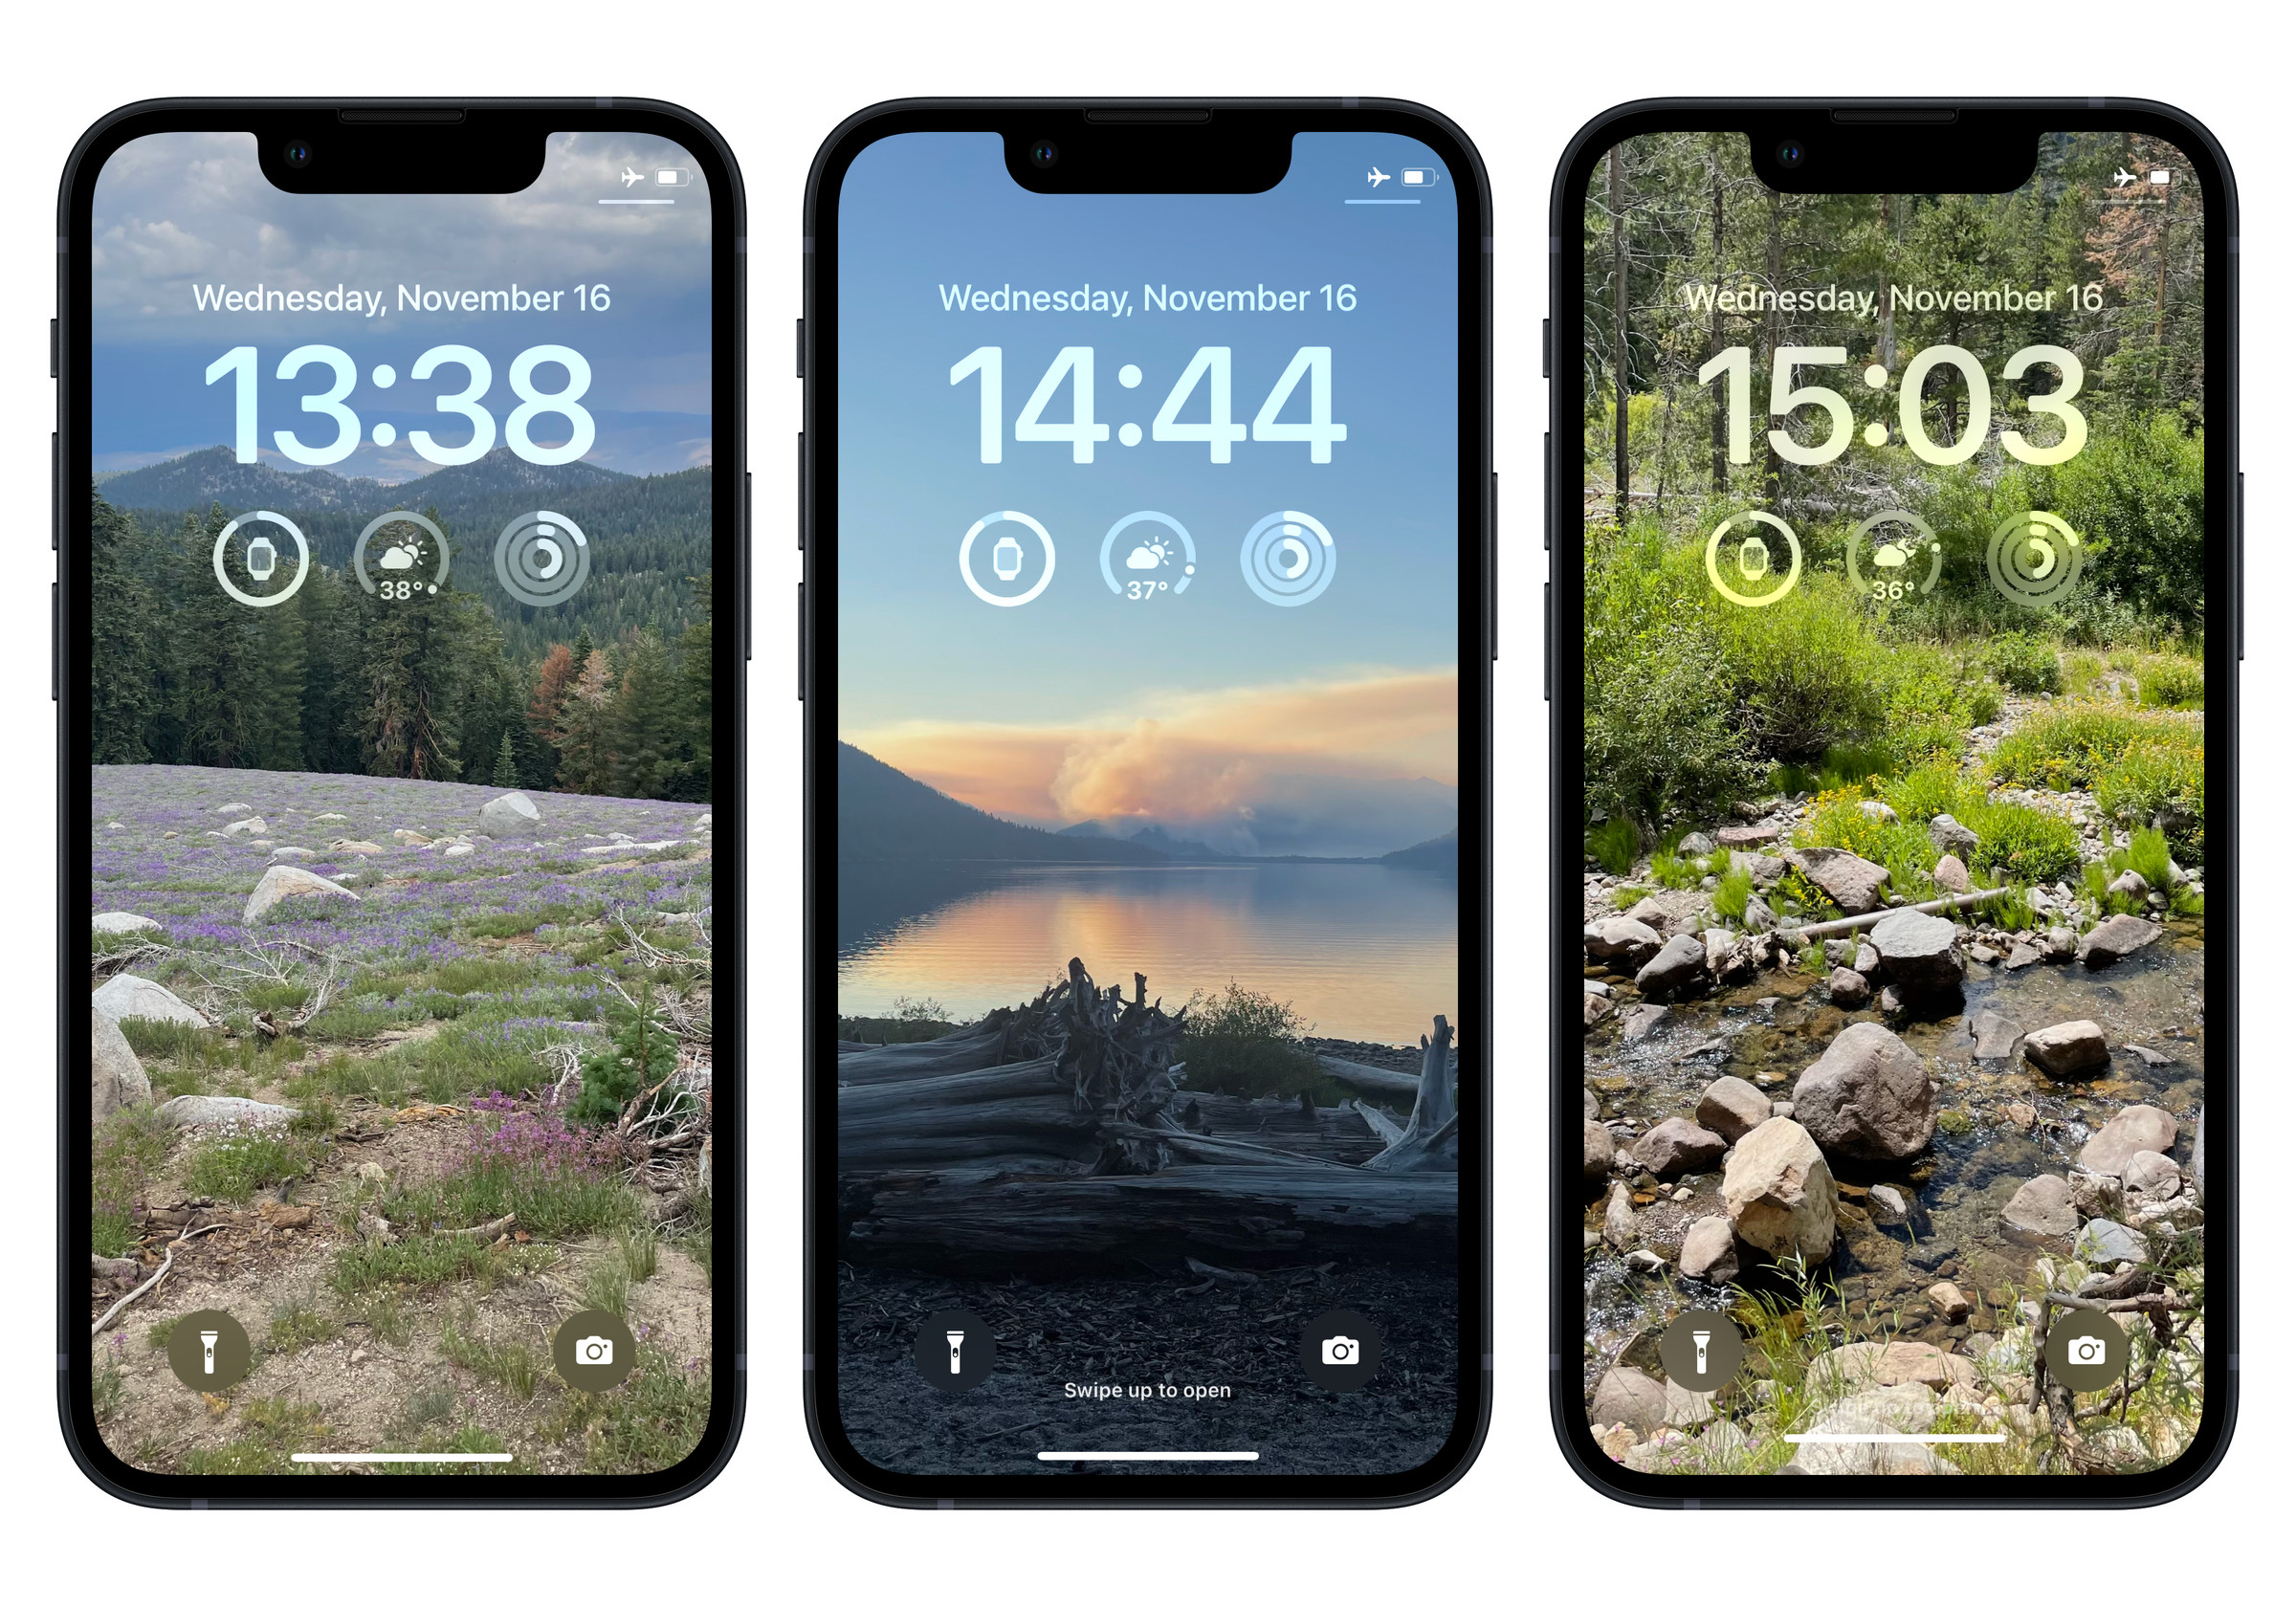 Biri bir dağ tarlasını, biri bir gölü ve biri de bir dereyi gösteren üç iPhone kilit ekranının ekran görüntüleri.